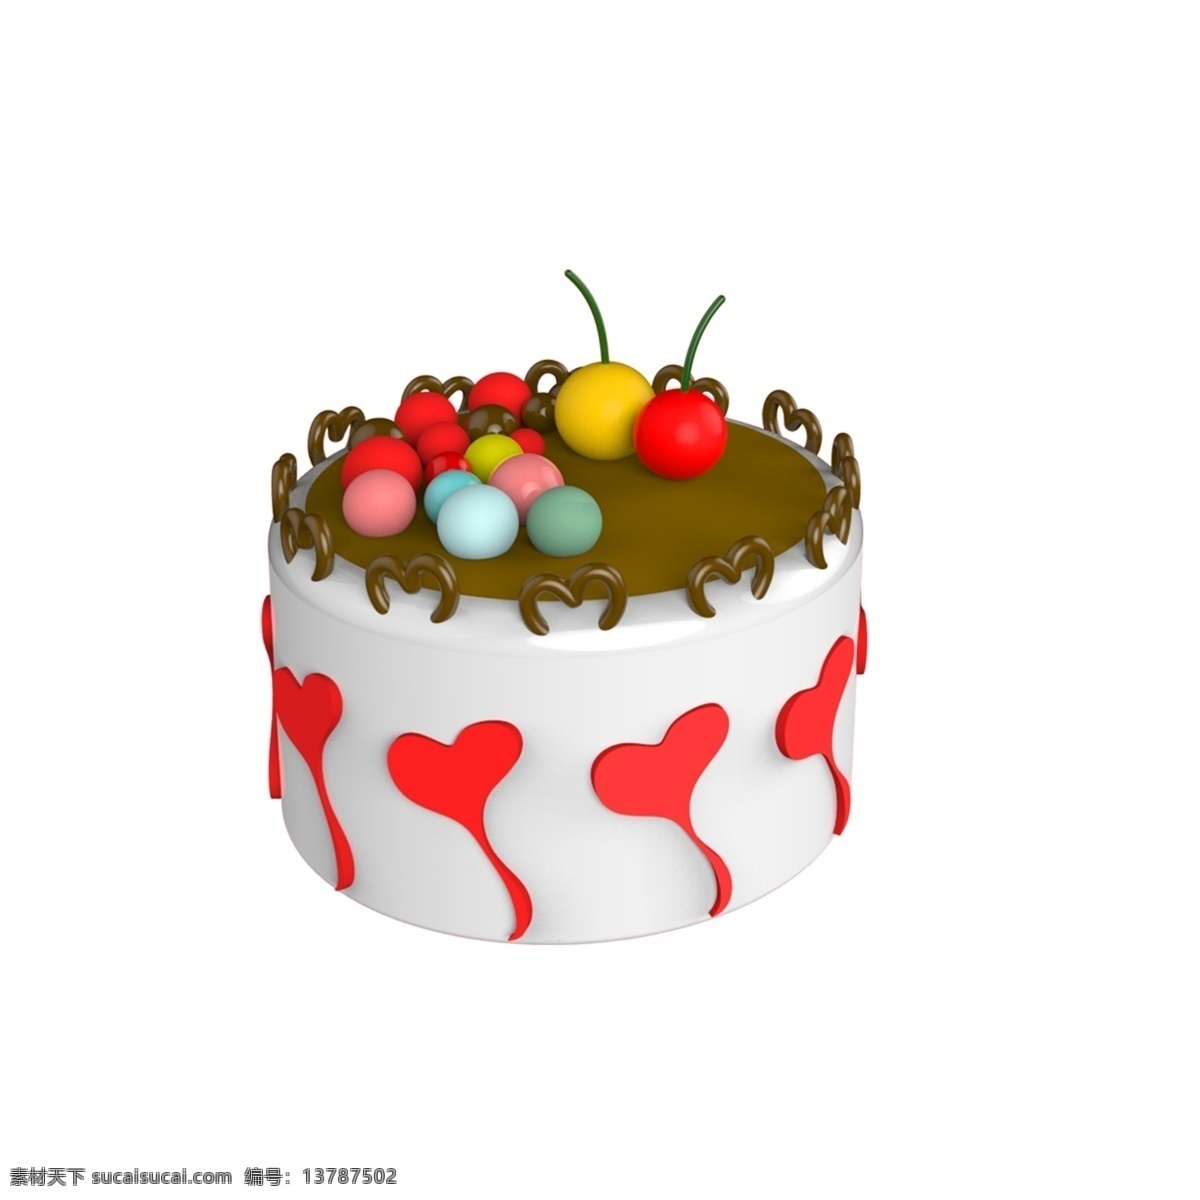 爱心 彩色 糖果 小 蛋糕 彩色糖果 小蛋糕 可爱的小蛋糕 手绘蛋糕 蛋糕图案 手绘蛋糕模型